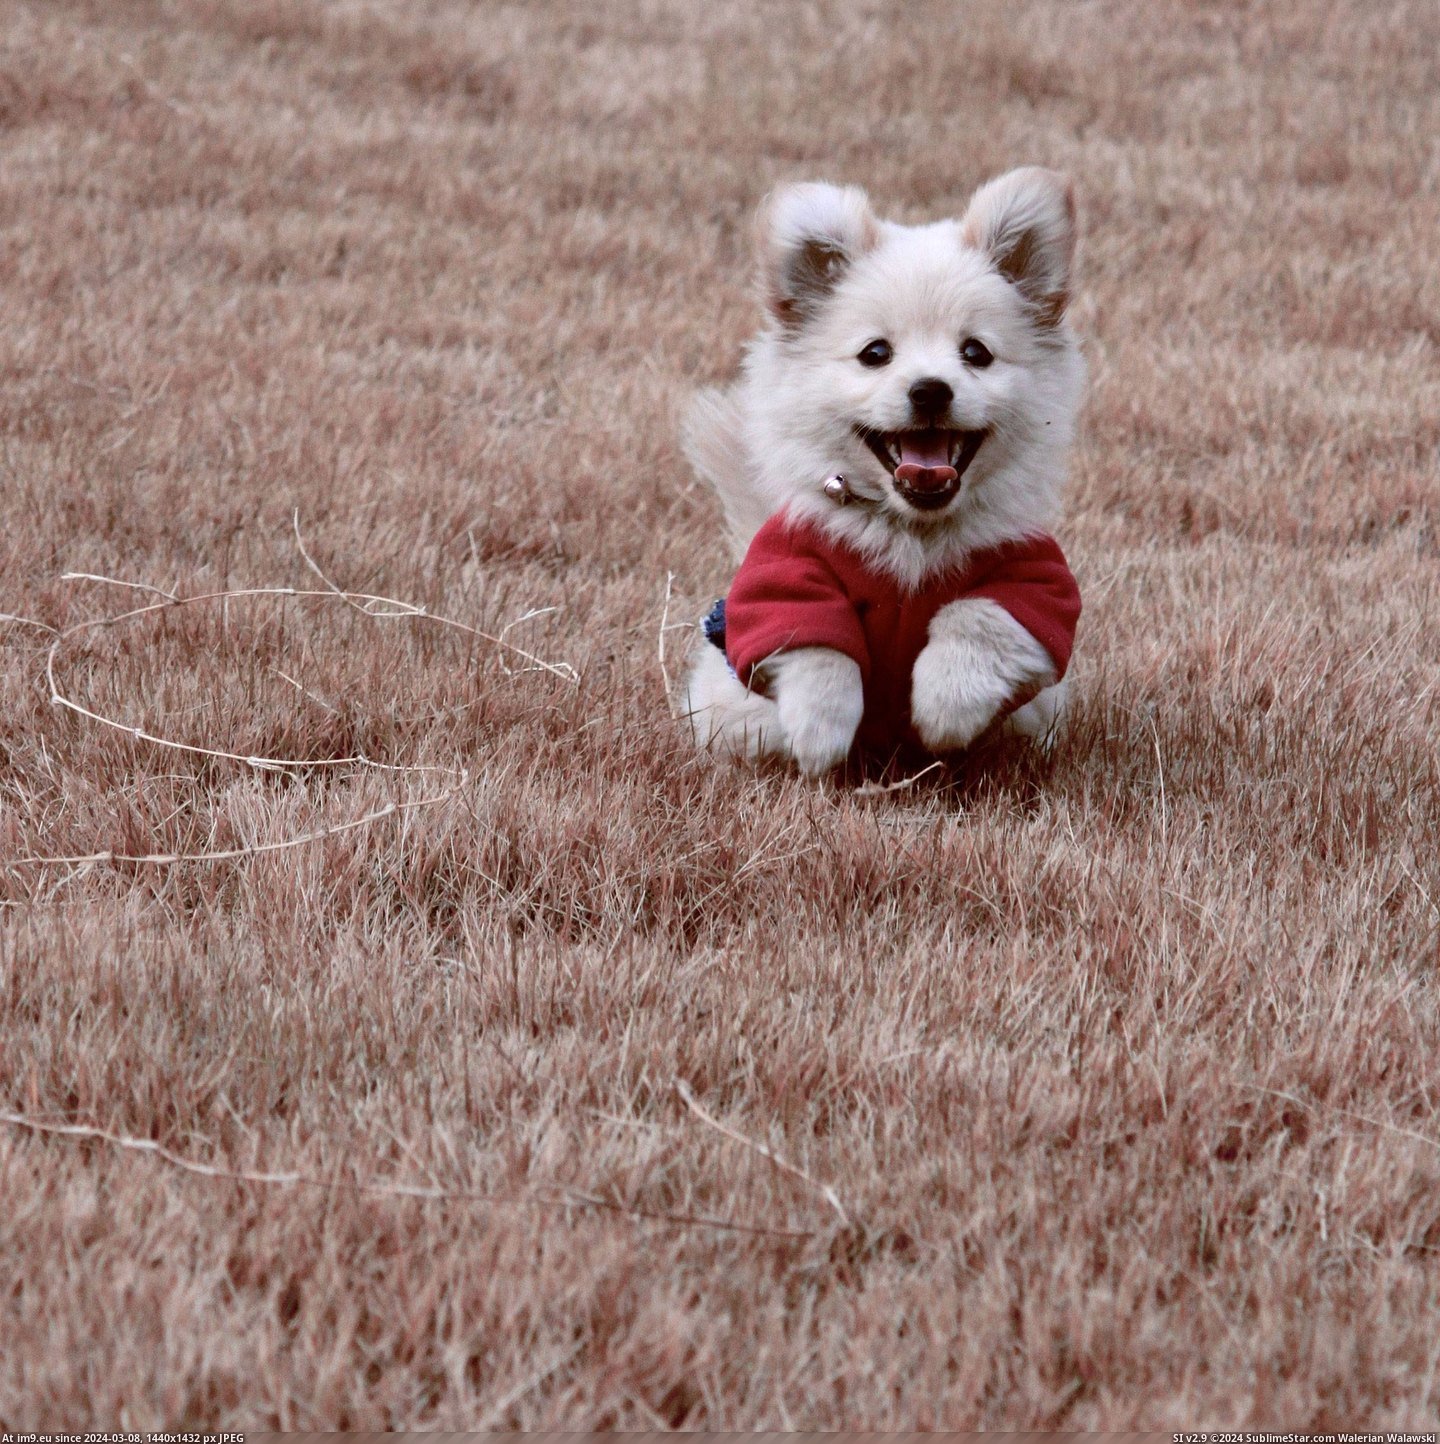 #Happy #Puppy #Friends [Aww] my friends happy little puppy Pic. (Bild von album My r/AWW favs))